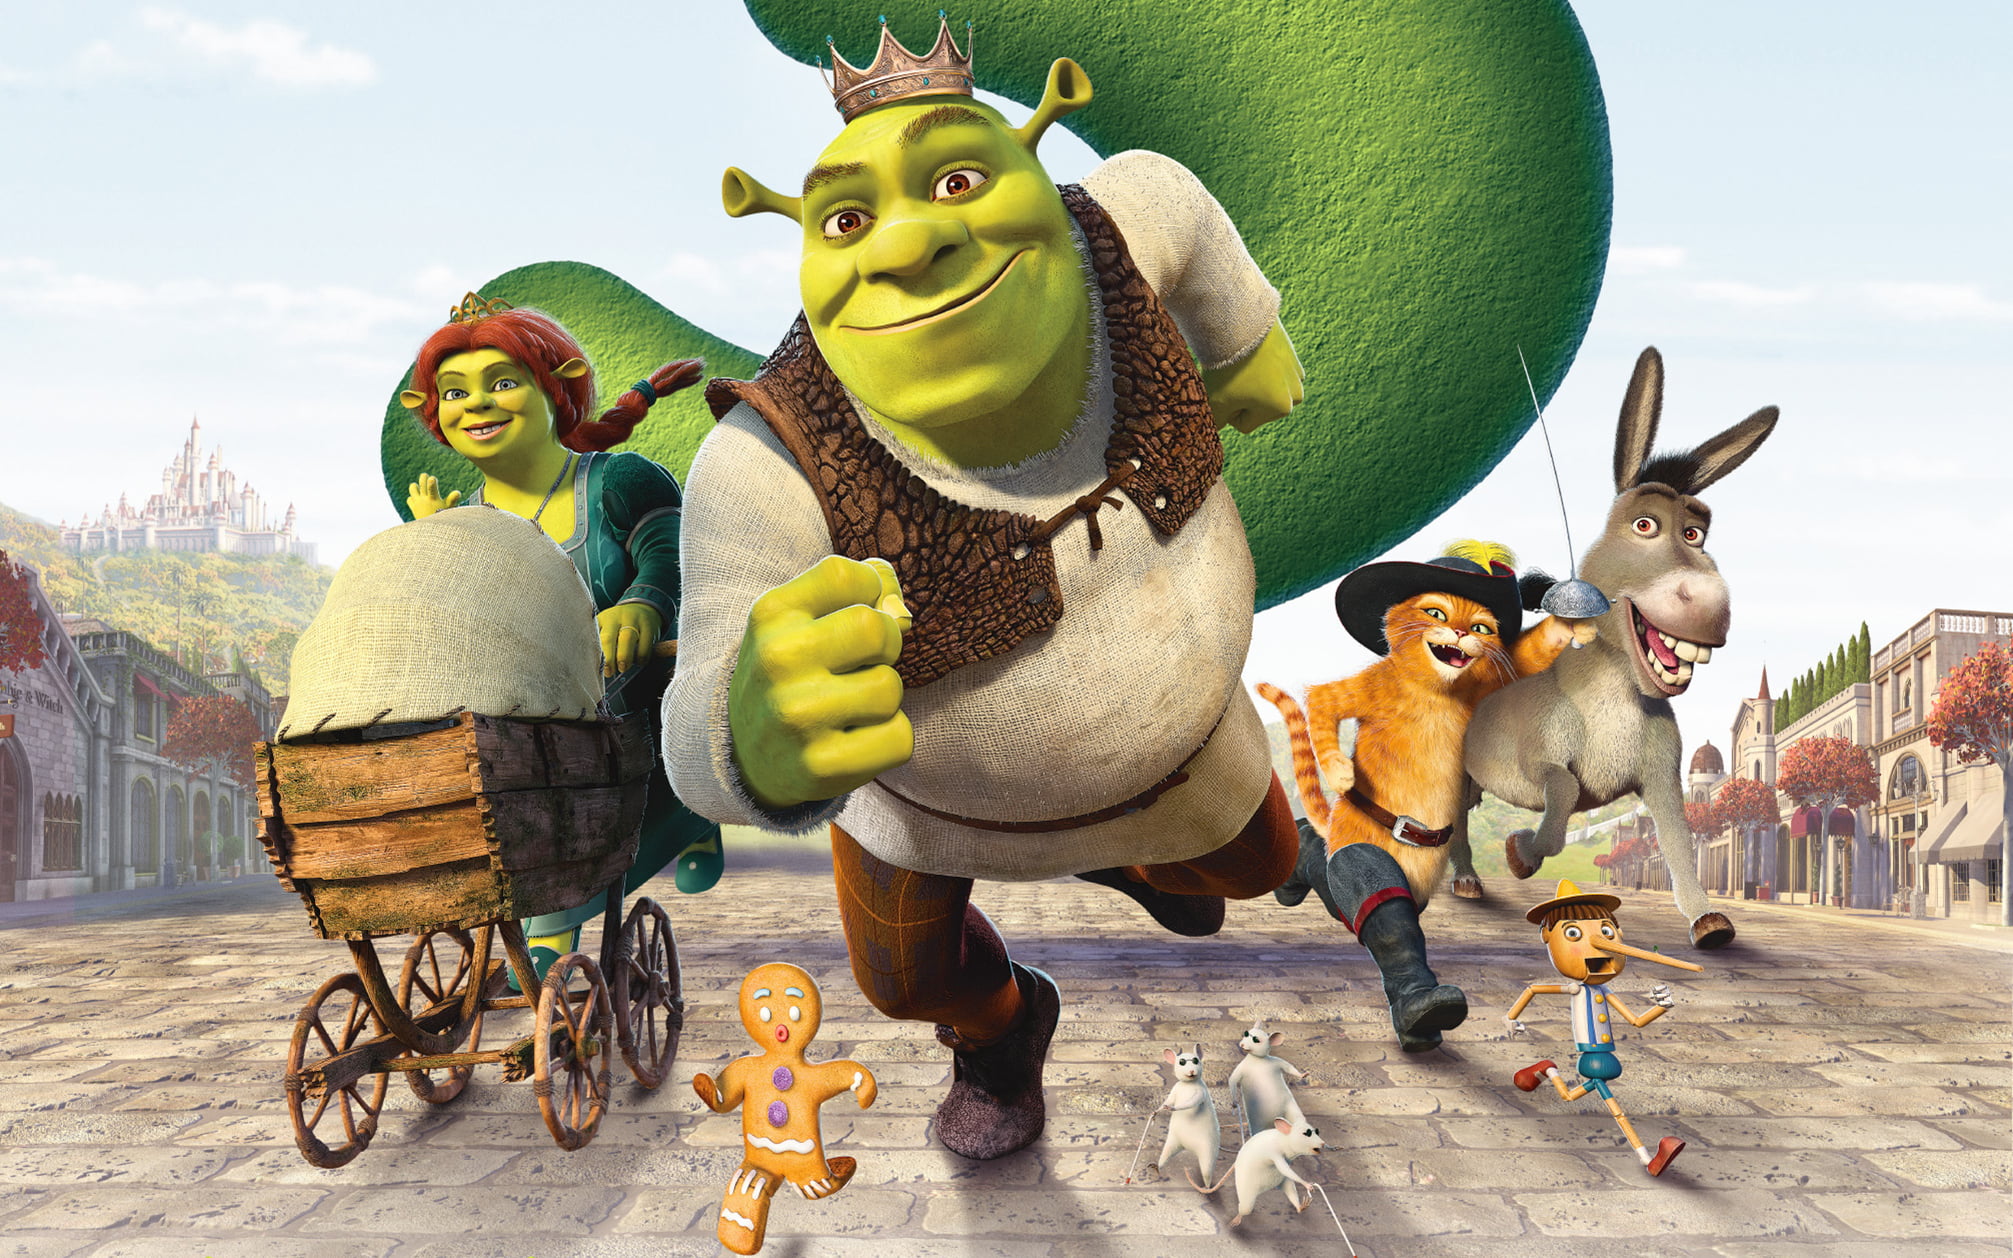 Shrek characters wallpaper, cartoon, crown, stroller, cookie